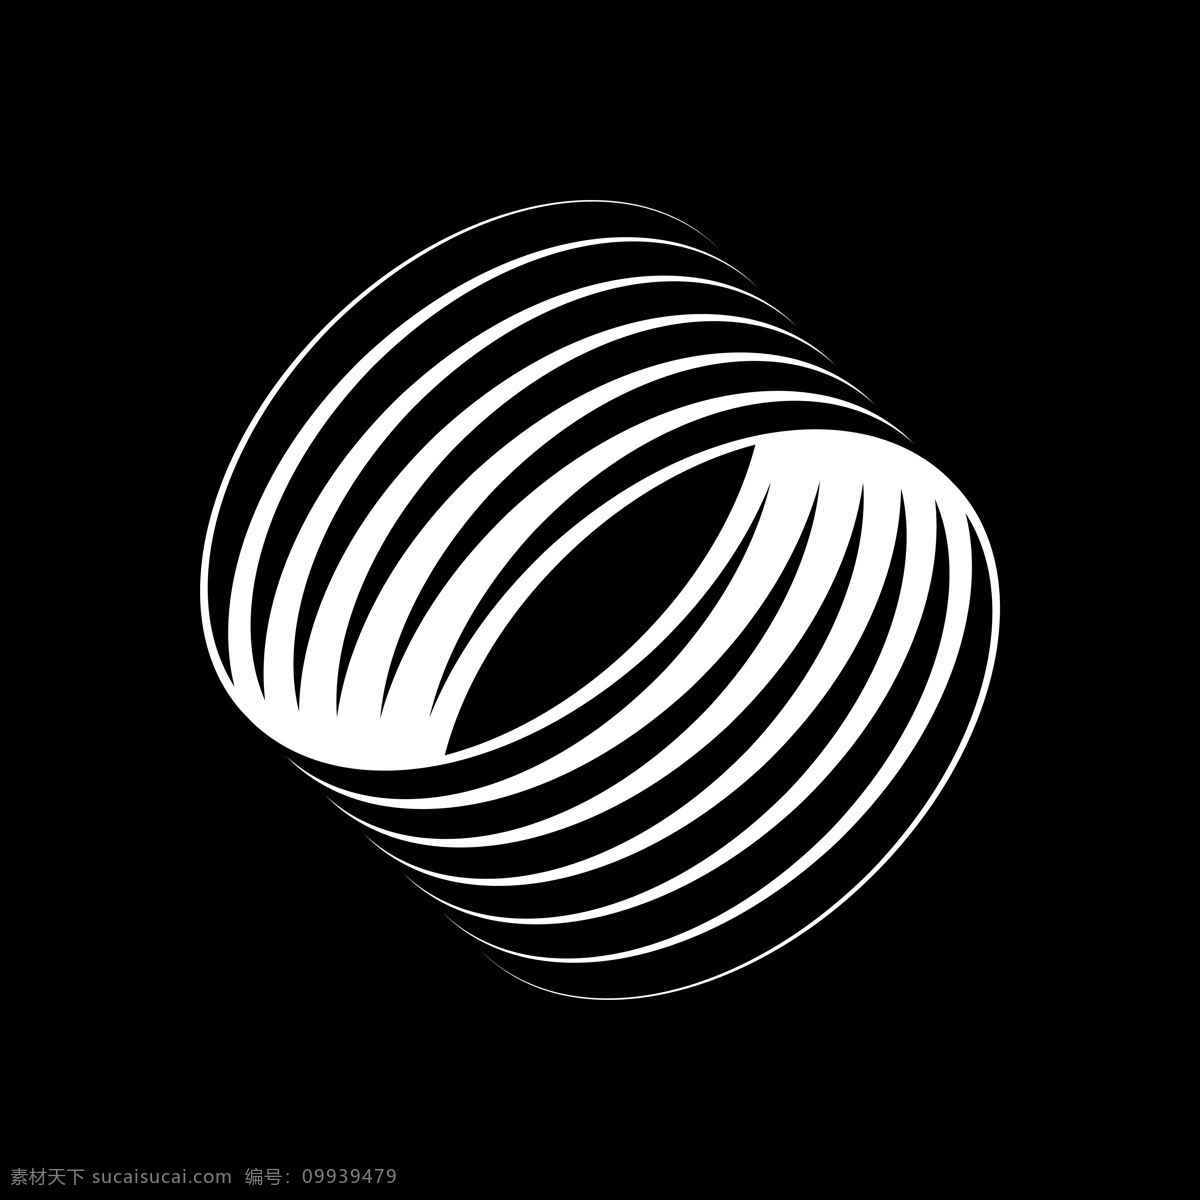 抽象 背景图片 潮流 几何 黑底 冲击 潮流抽象元素 底纹边框 抽象底纹 黑白相间 圆环